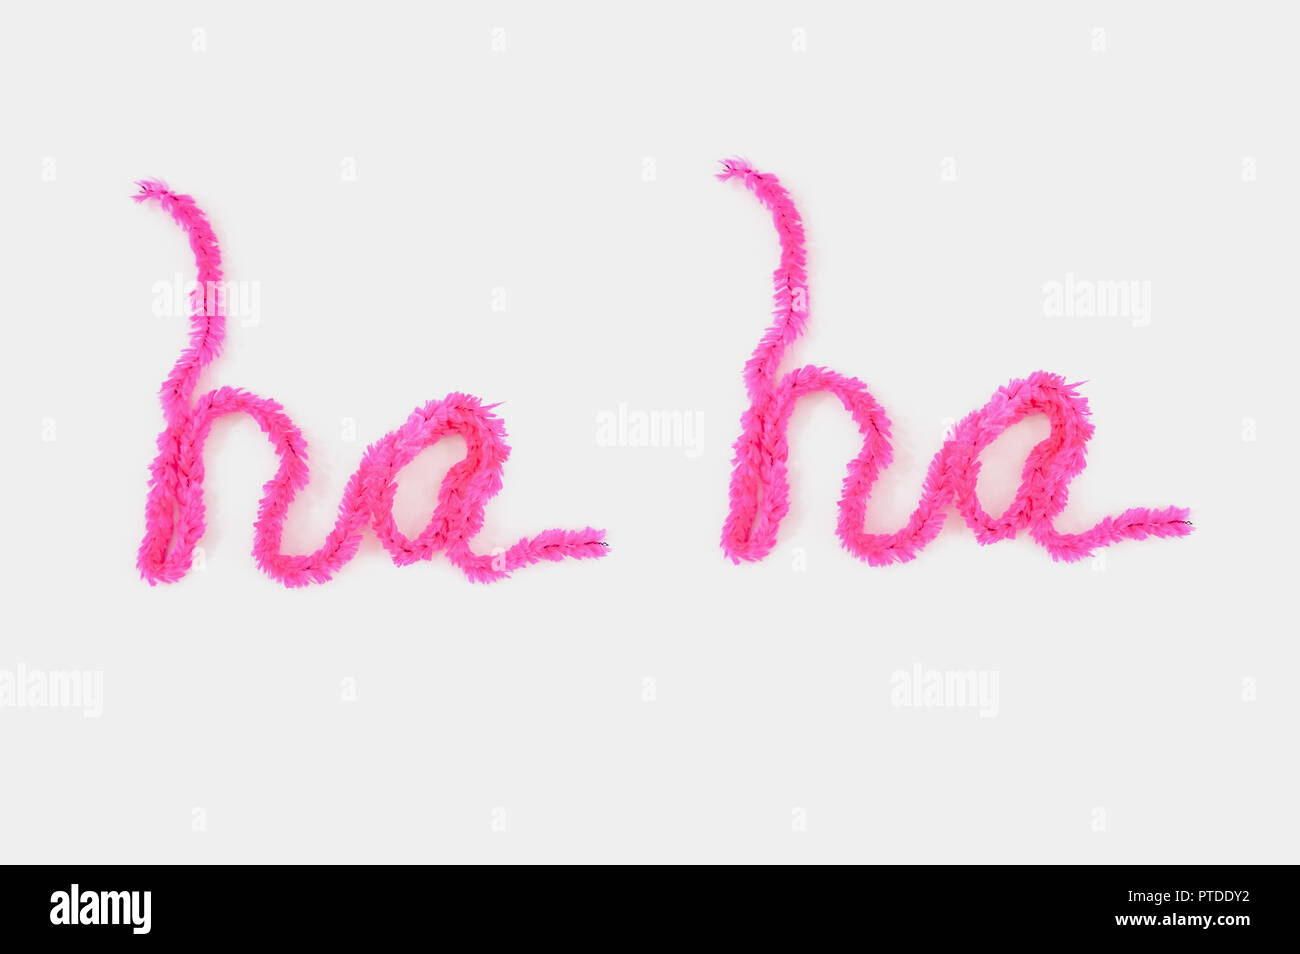 Rosa tipografia fuzzy realizzato in morbido filato l'ortografia delle parole "ah ah' su uno sfondo bianco con una stanza per la copia Foto Stock